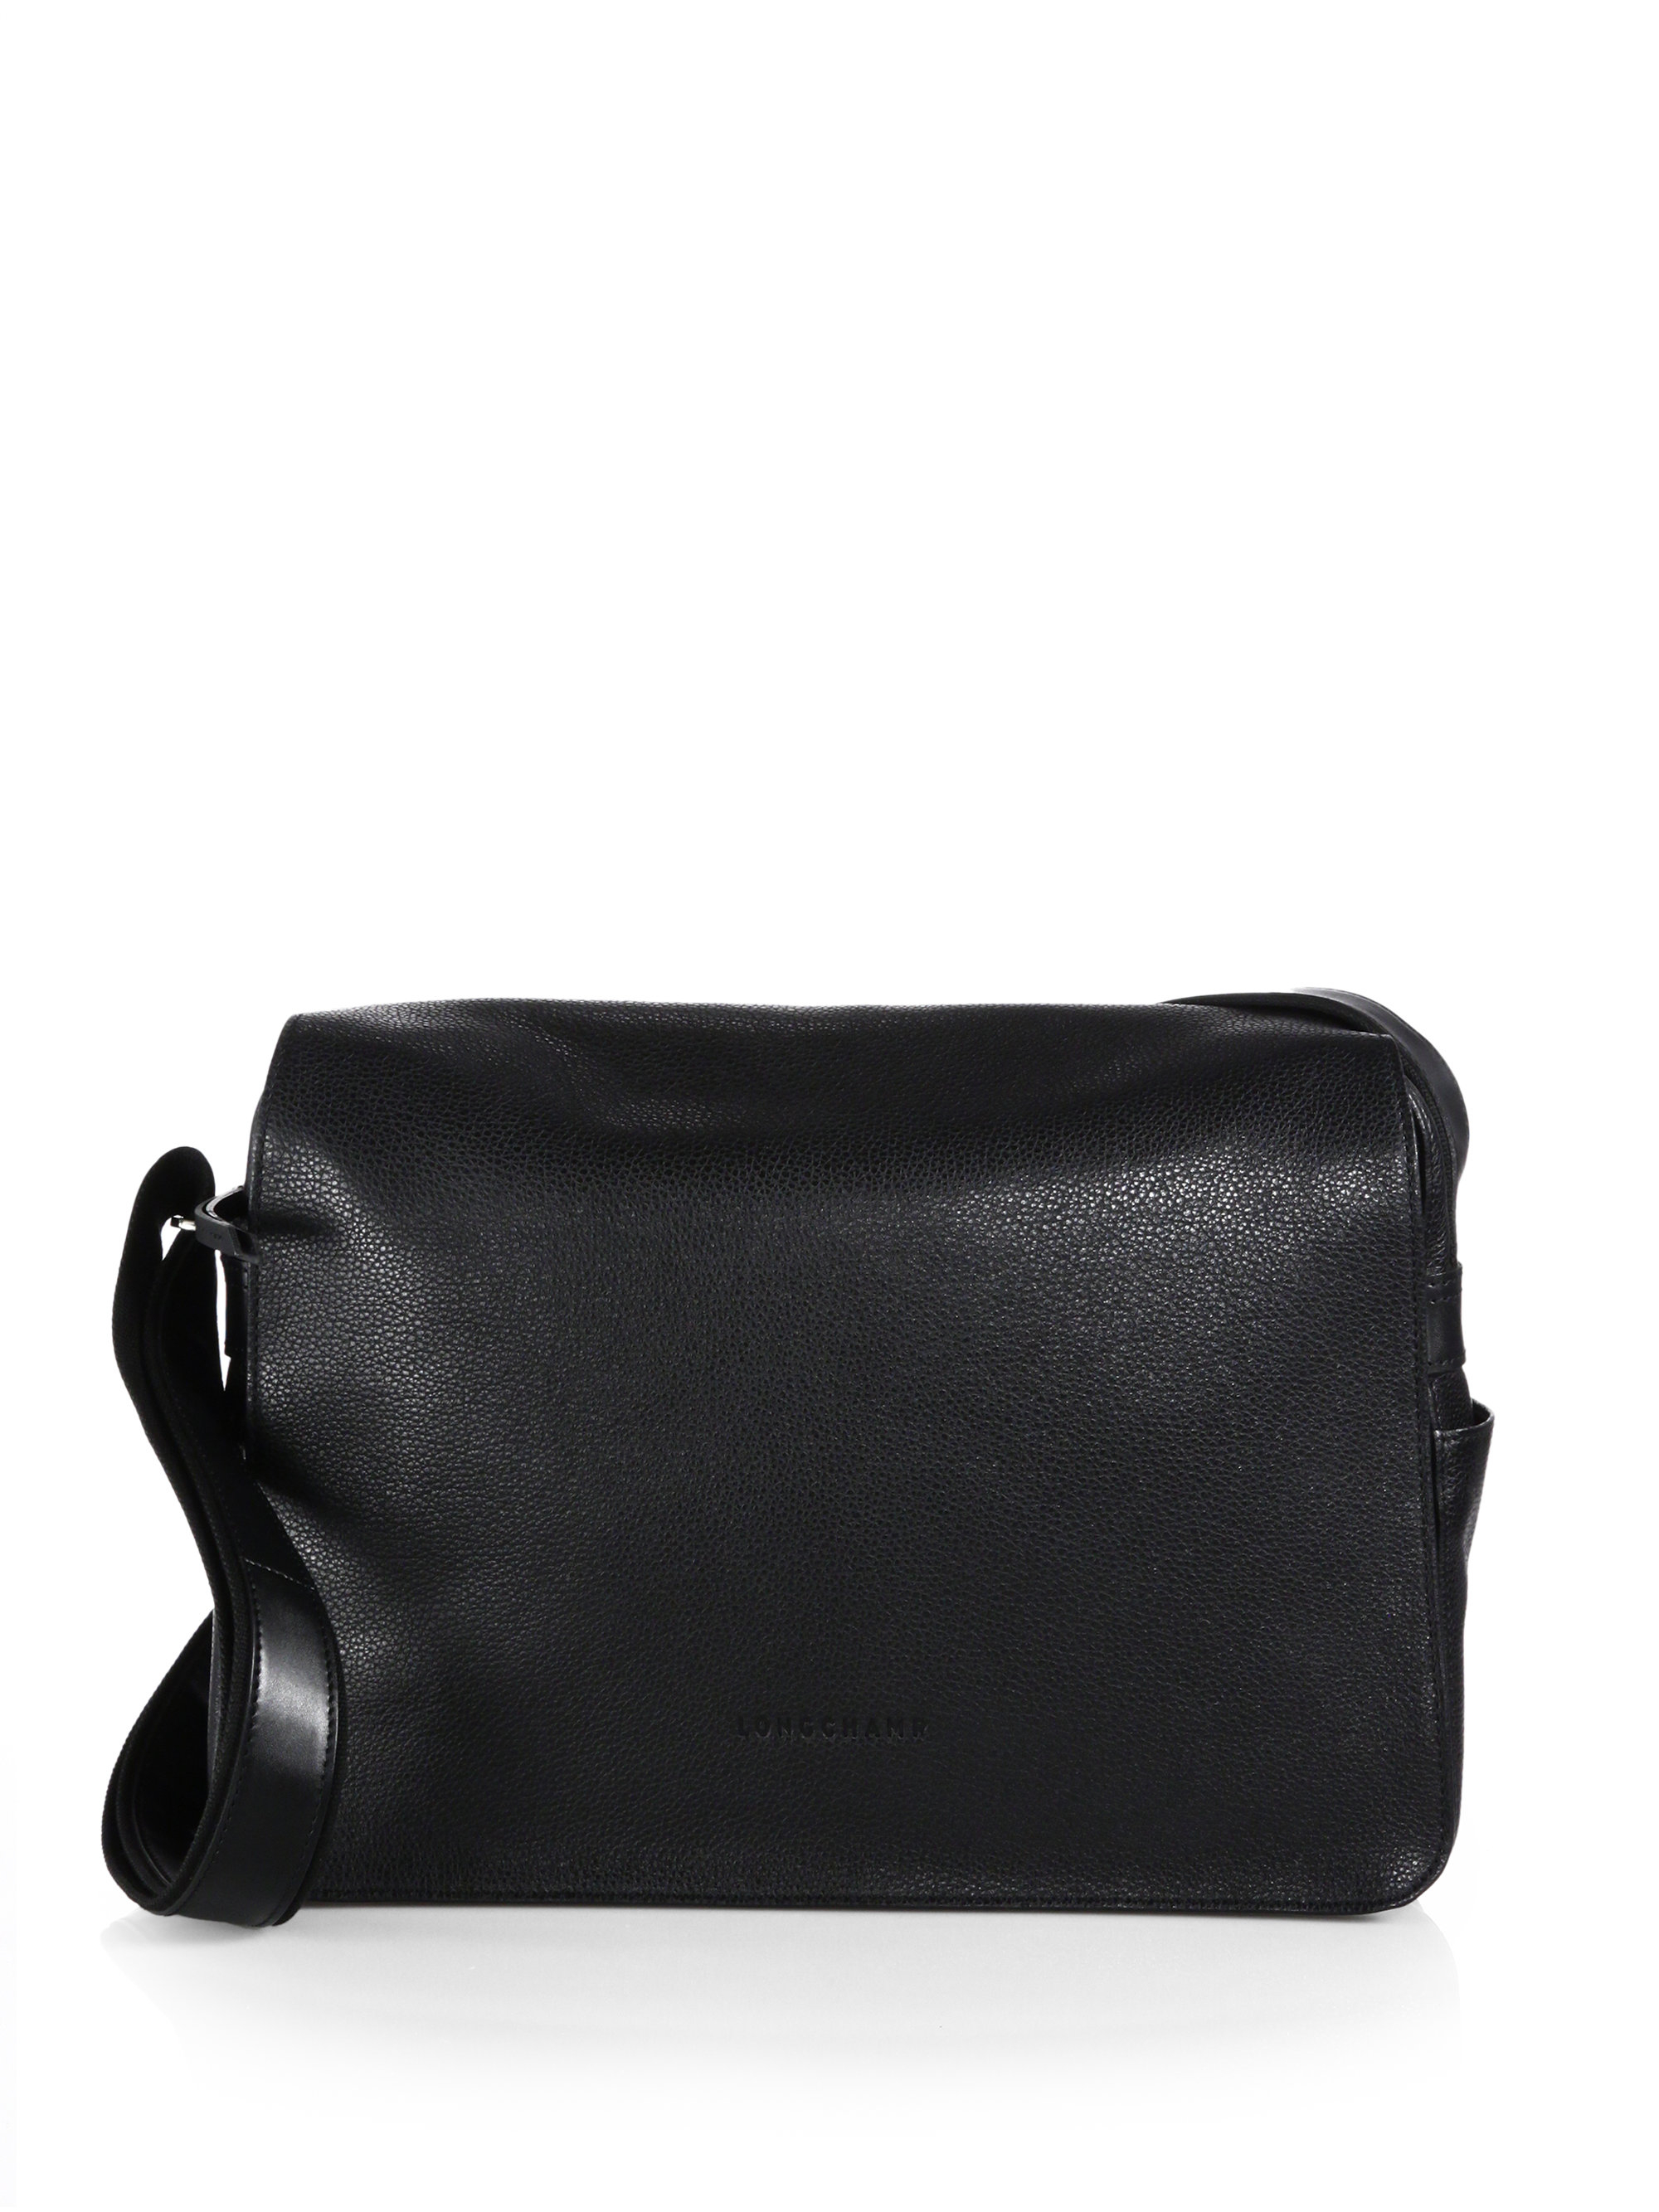 Black Leather Messenger Bag for Men